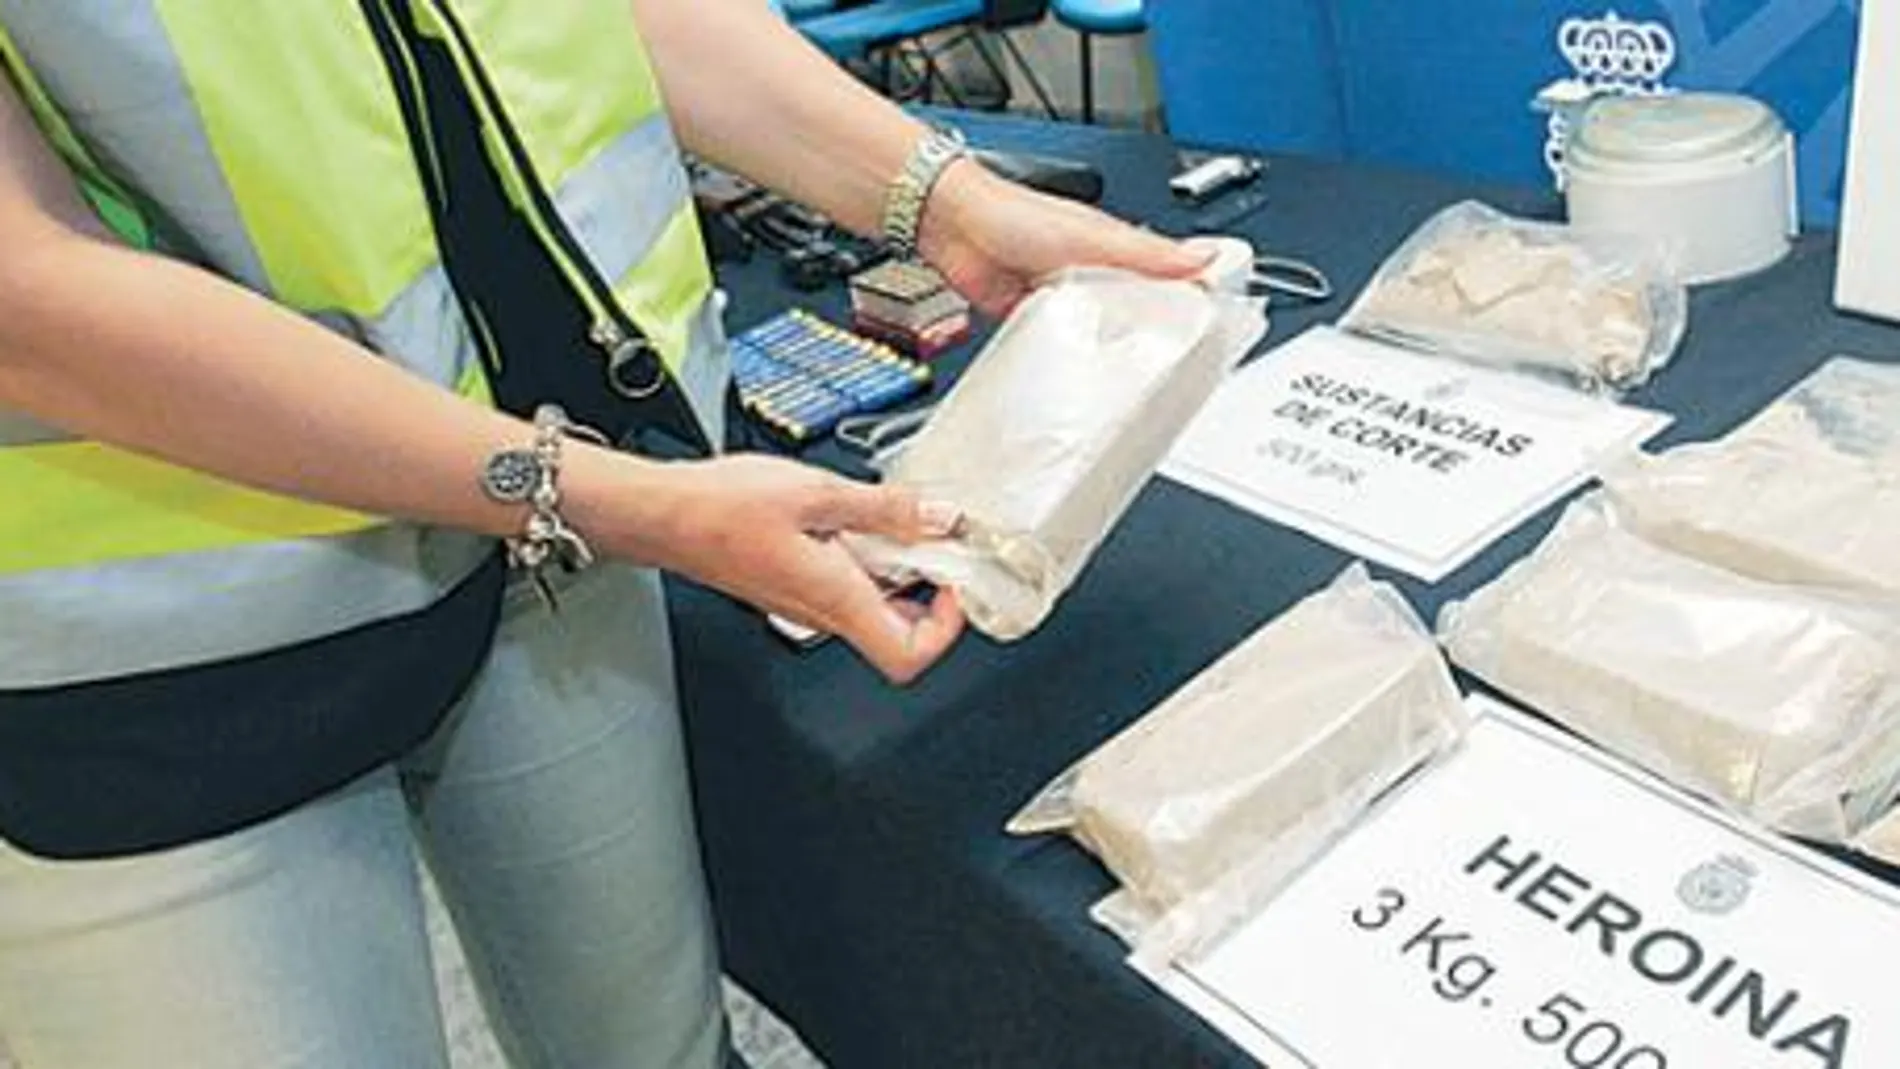 Cinco traficantes detenidos y 35 kilos de droga intervenidos